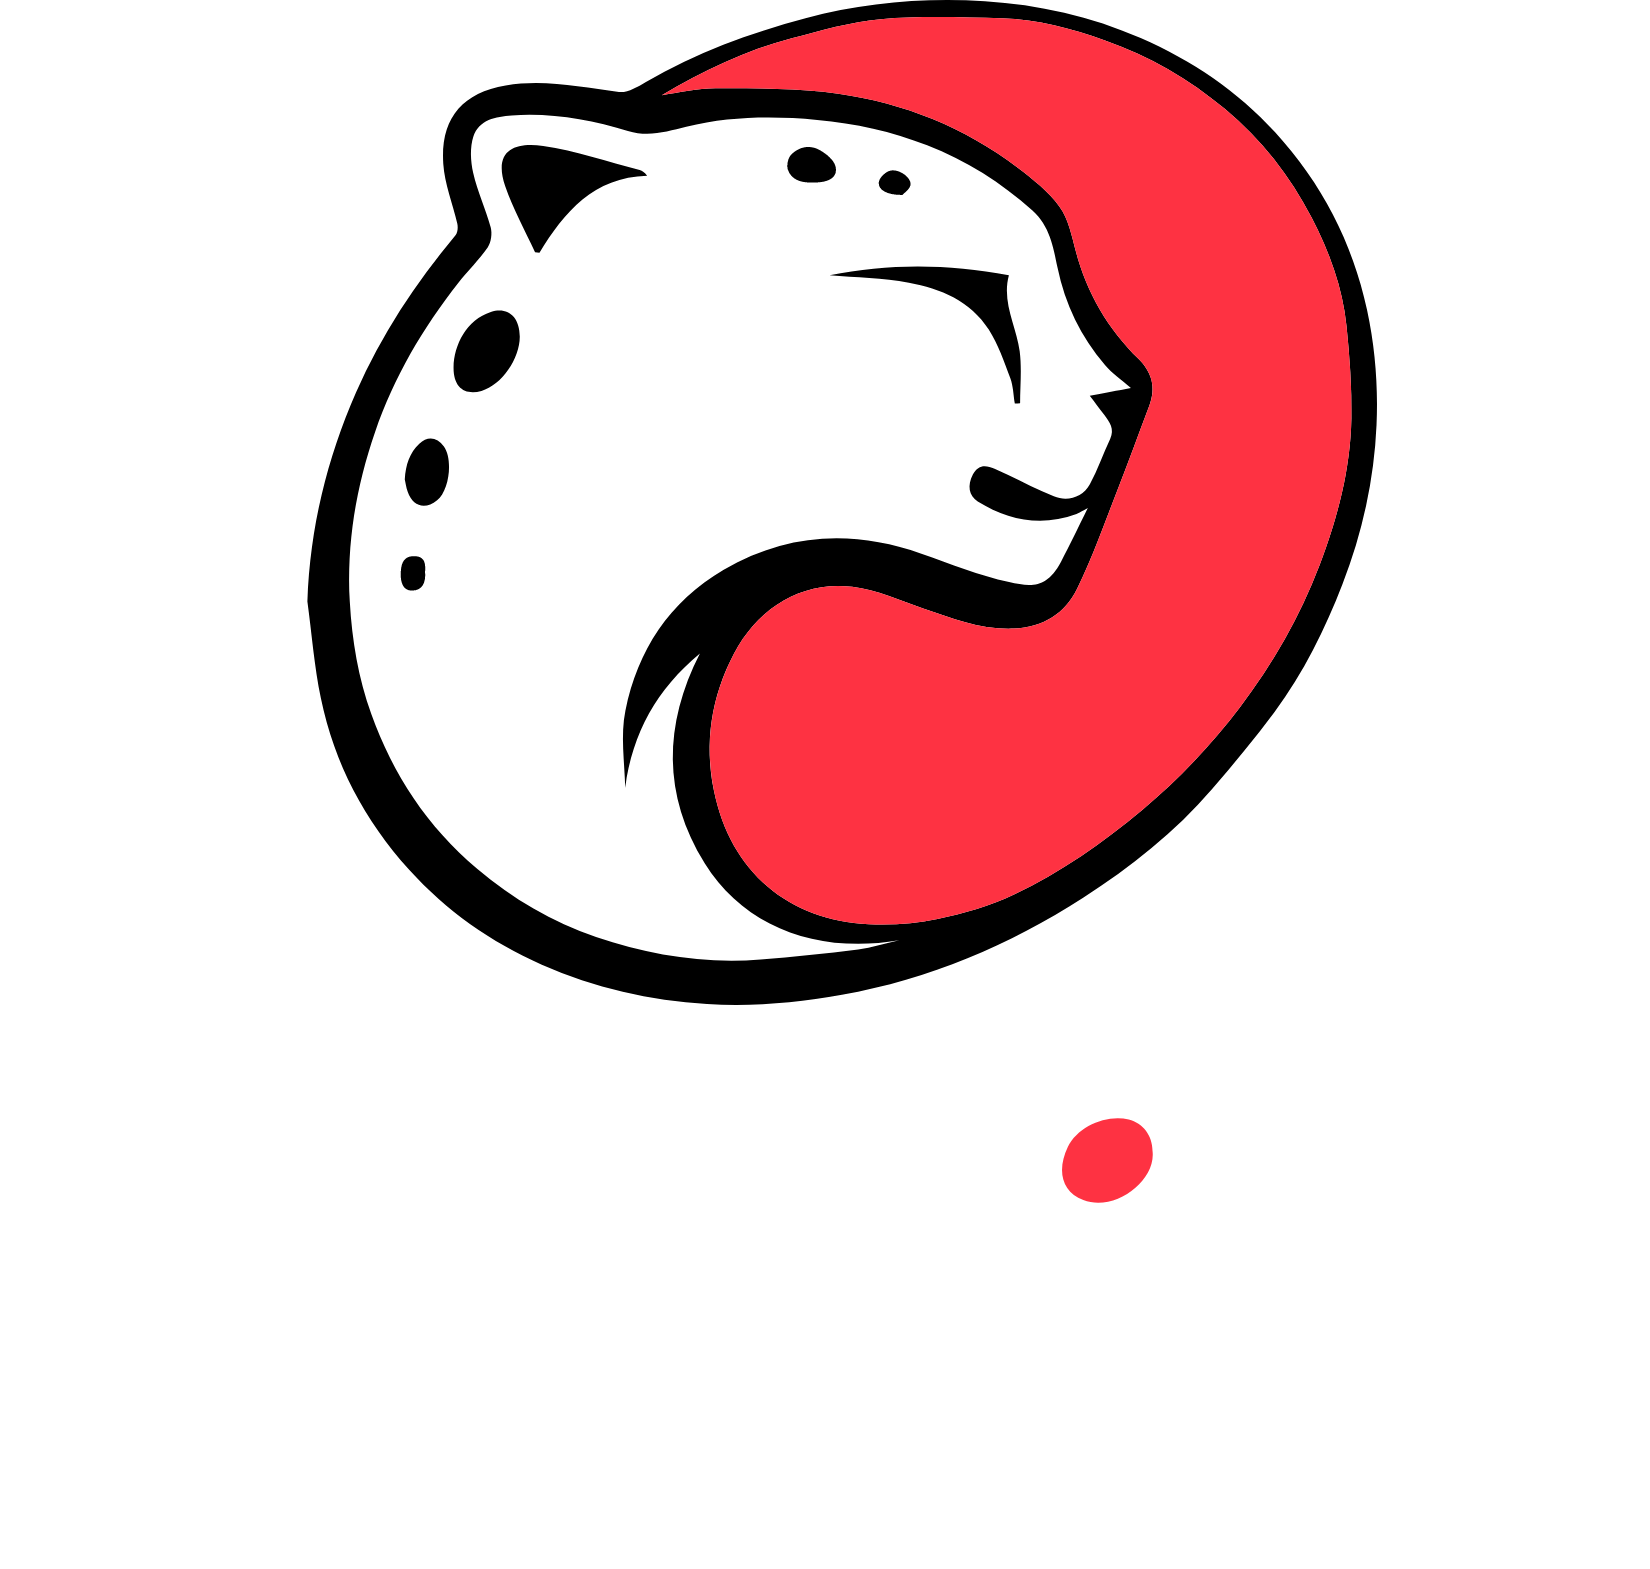 Playtika logo grand pour les fonds sombres (PNG transparent)